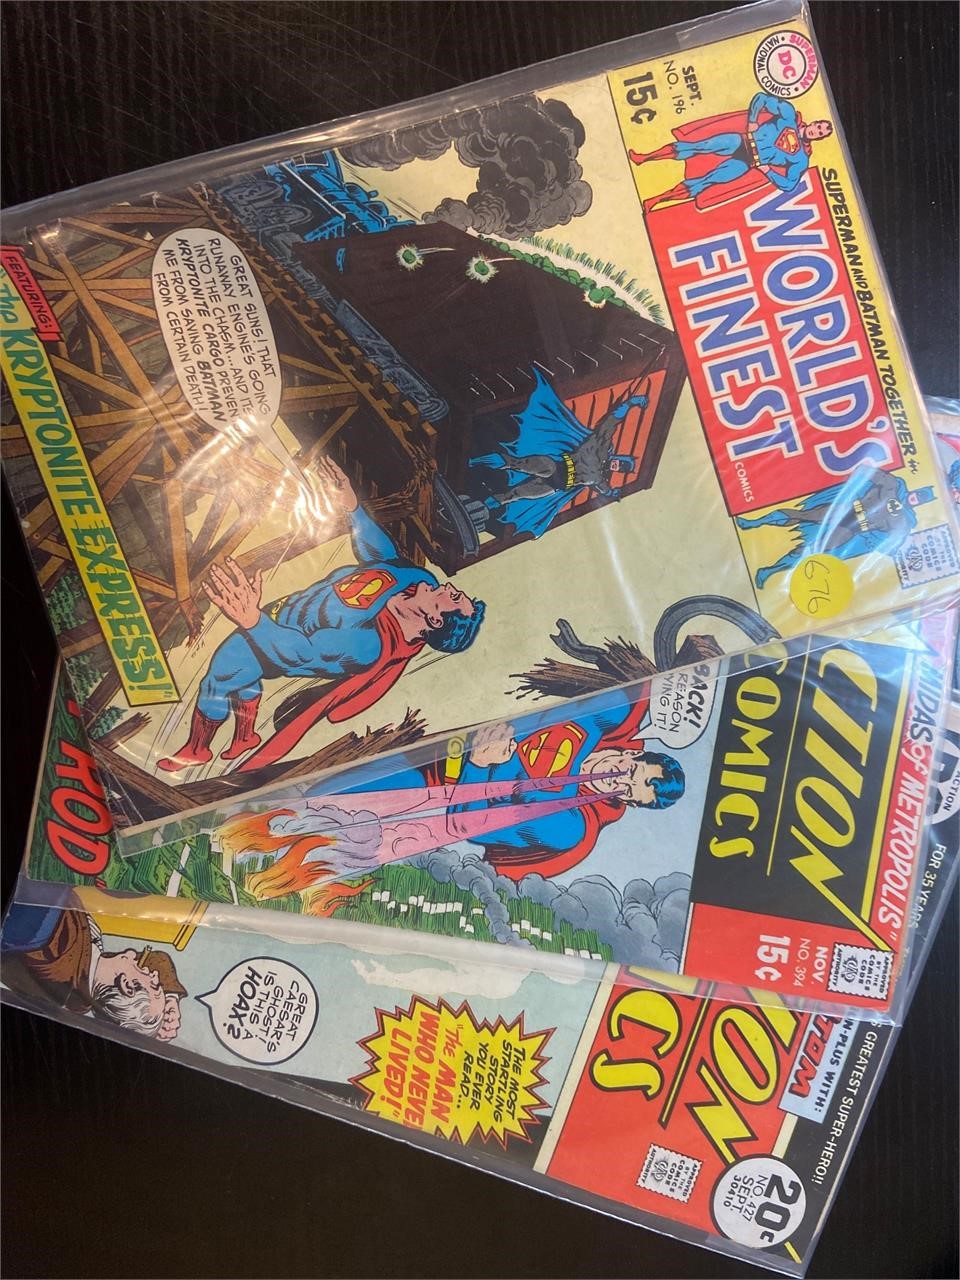 3 Vintage Superman Comic Books - Action Comics